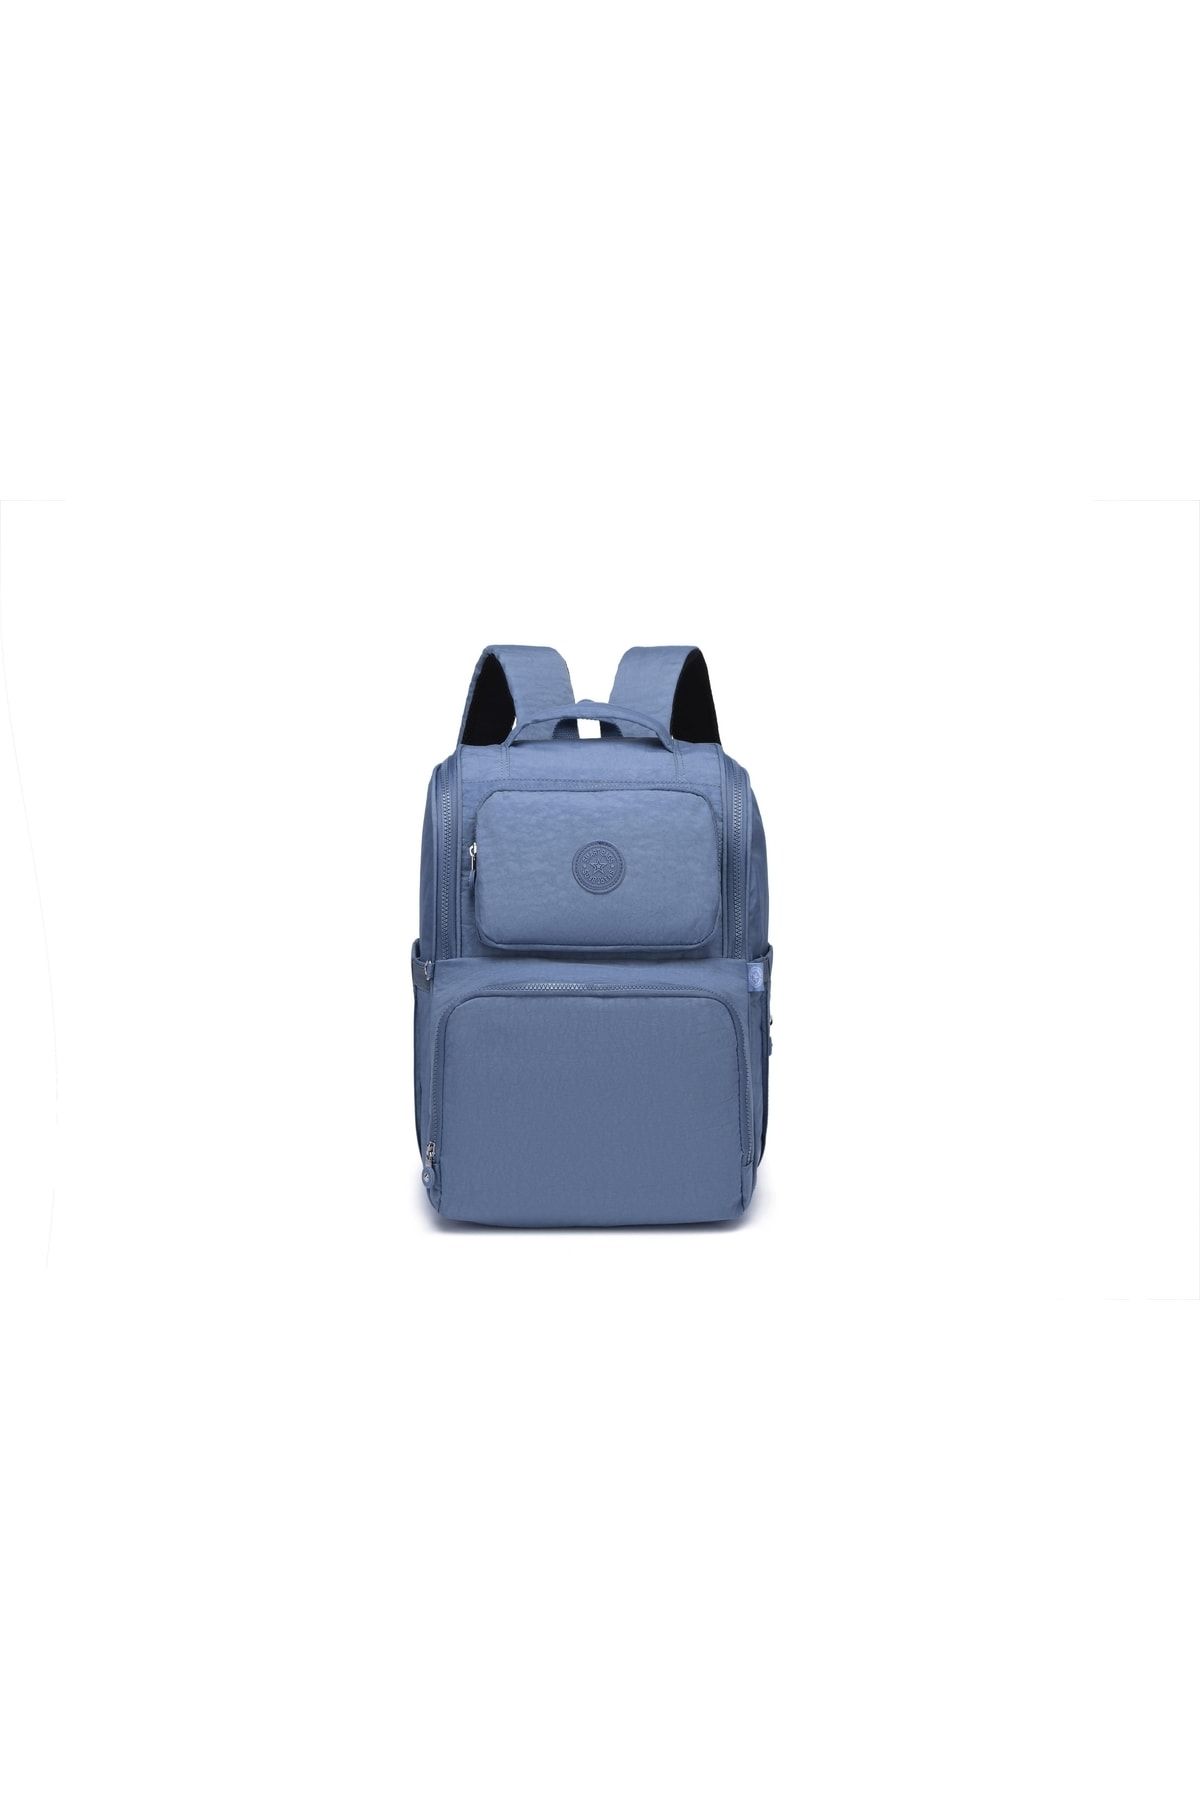 Smart Bags Smbyb3000-0034 J.mavi Kadın Bebek Bakım Sırt Çantası